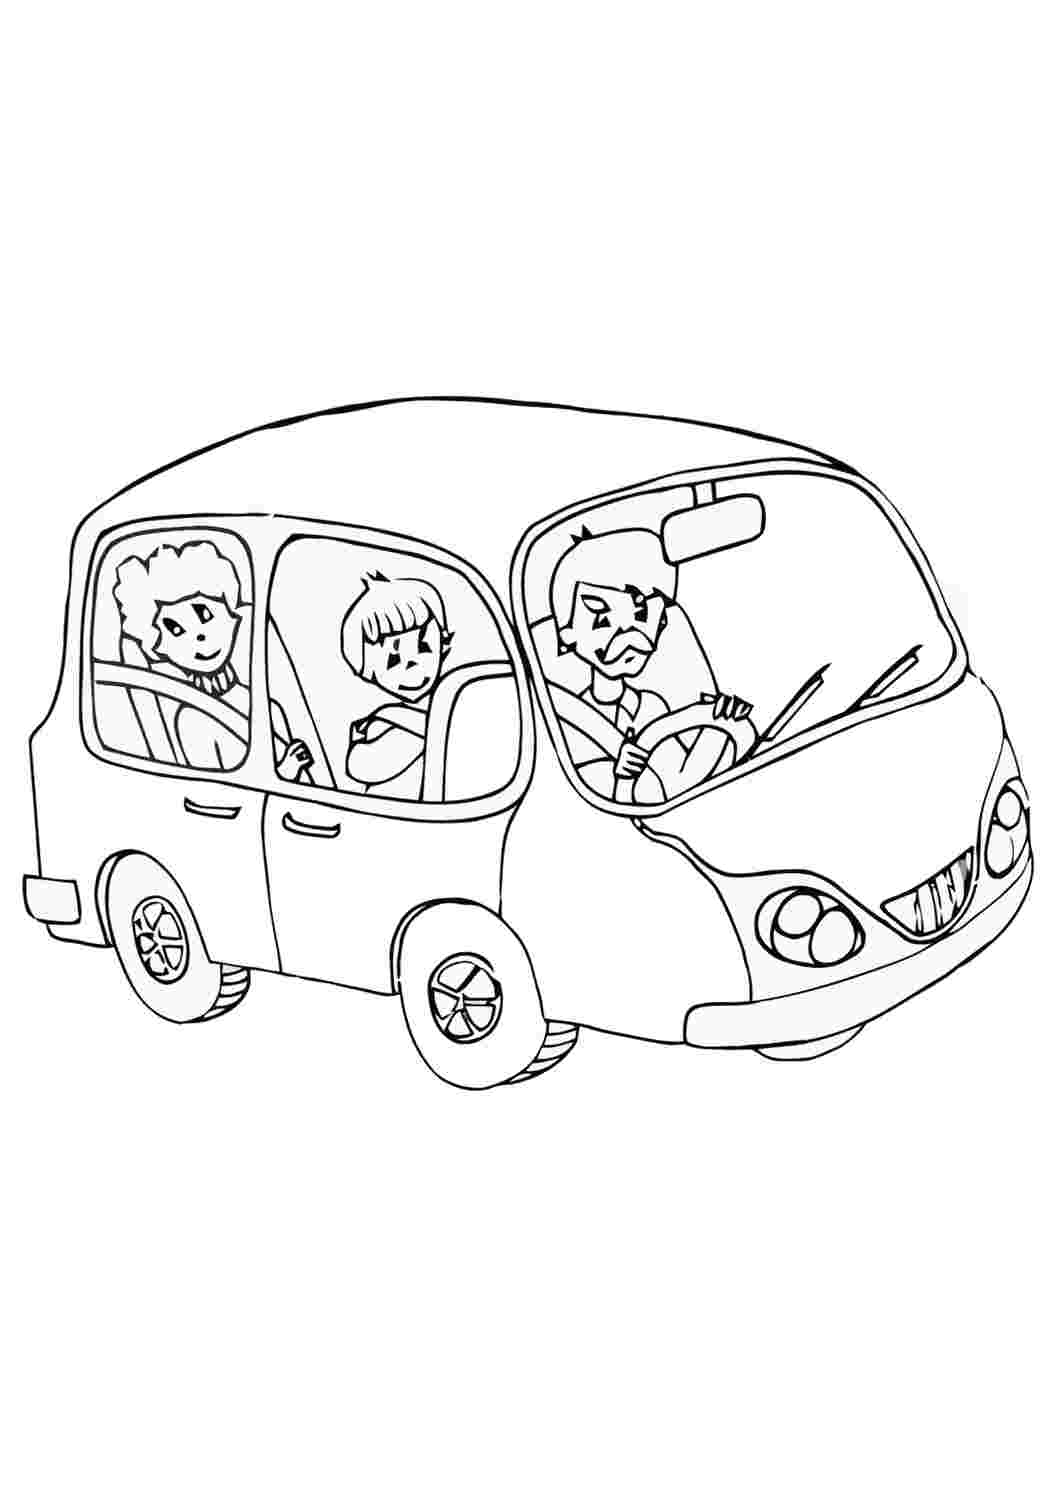 Коля с родителями едет на машине. Раскраска водитель. Машина с водителем раскраска для детей. Водитель раскраска для детей. Семейный автомобиль рисунок.